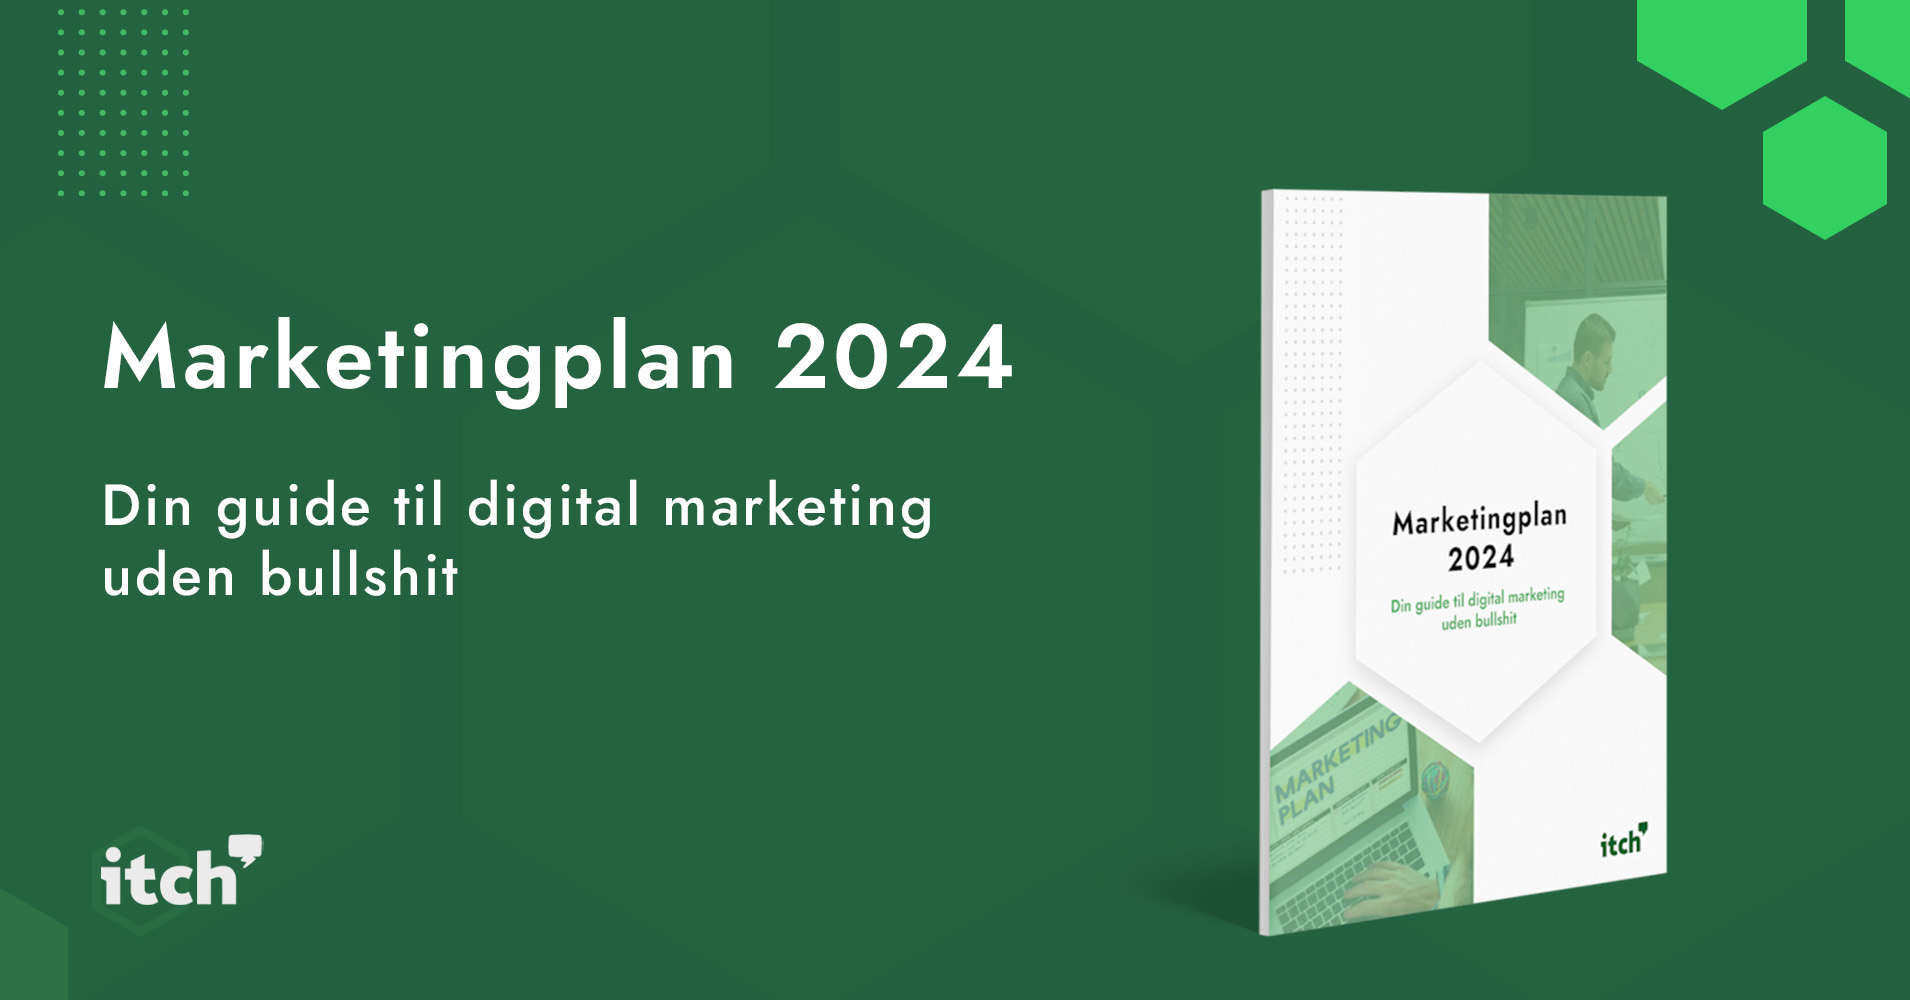 Marketingplan-2024_1910x1000